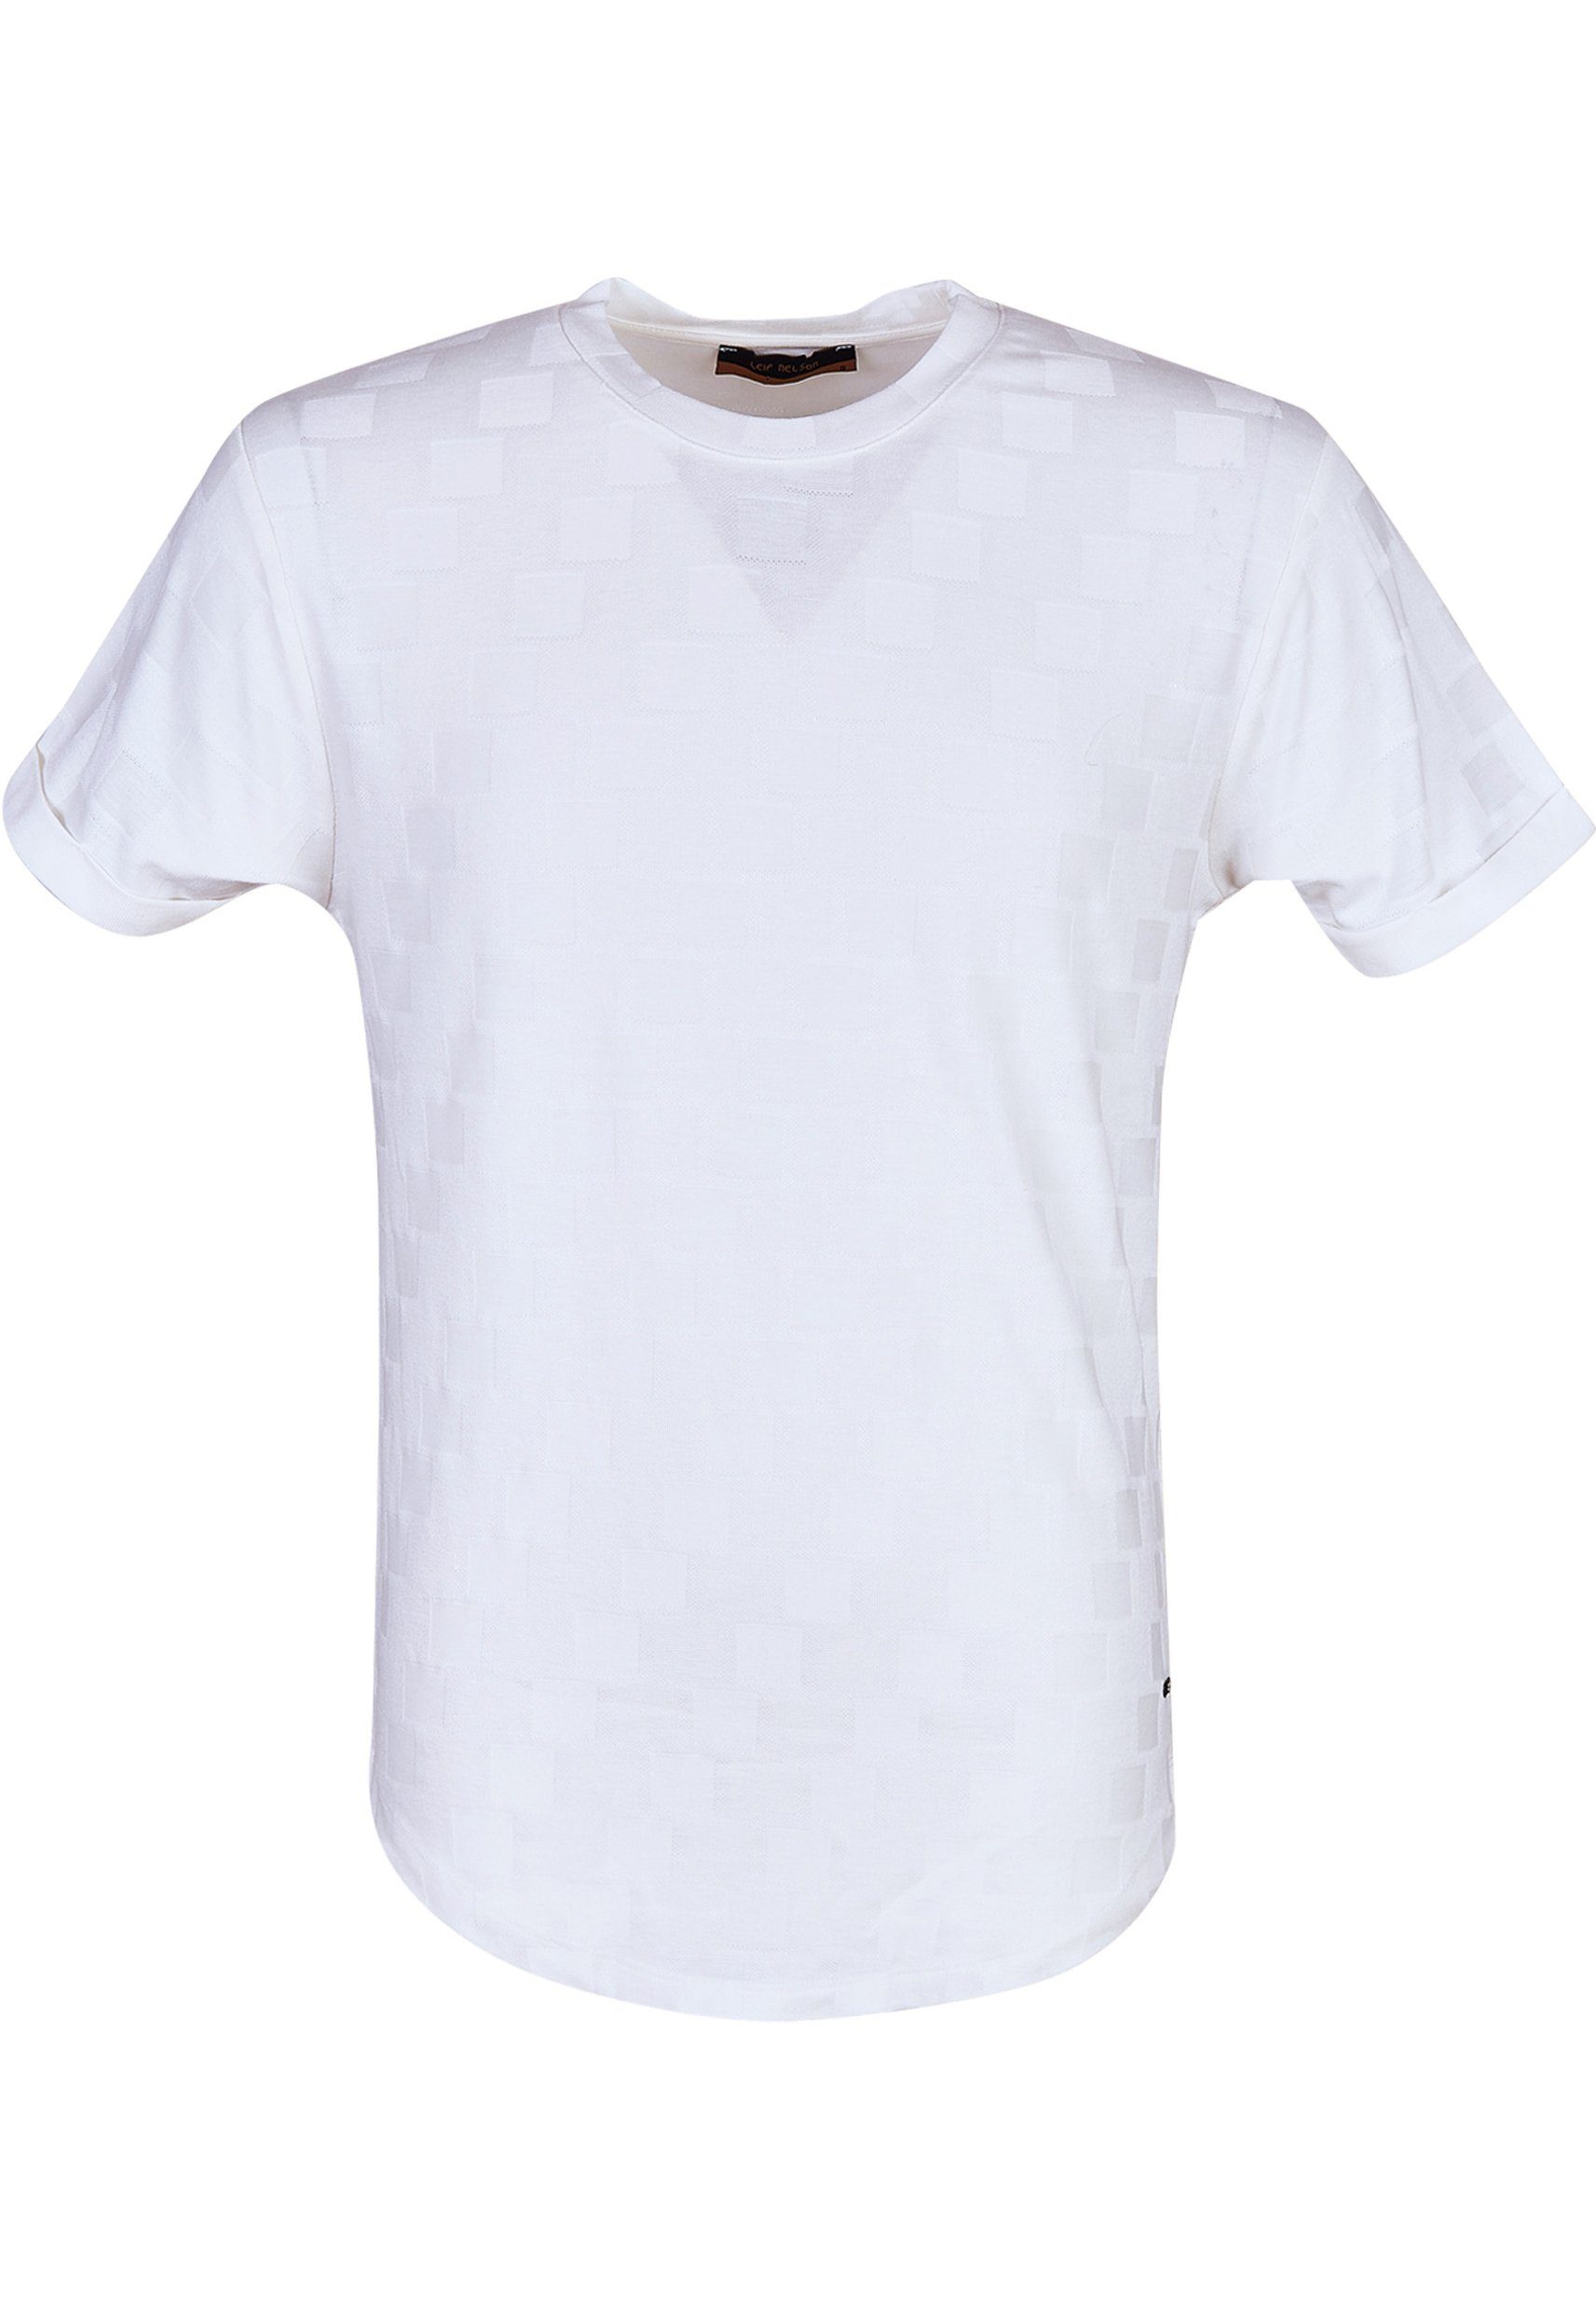 Leif Nelson T-Shirt Herren T-Shirt LN-55655 Rundhals normal ecruweiß